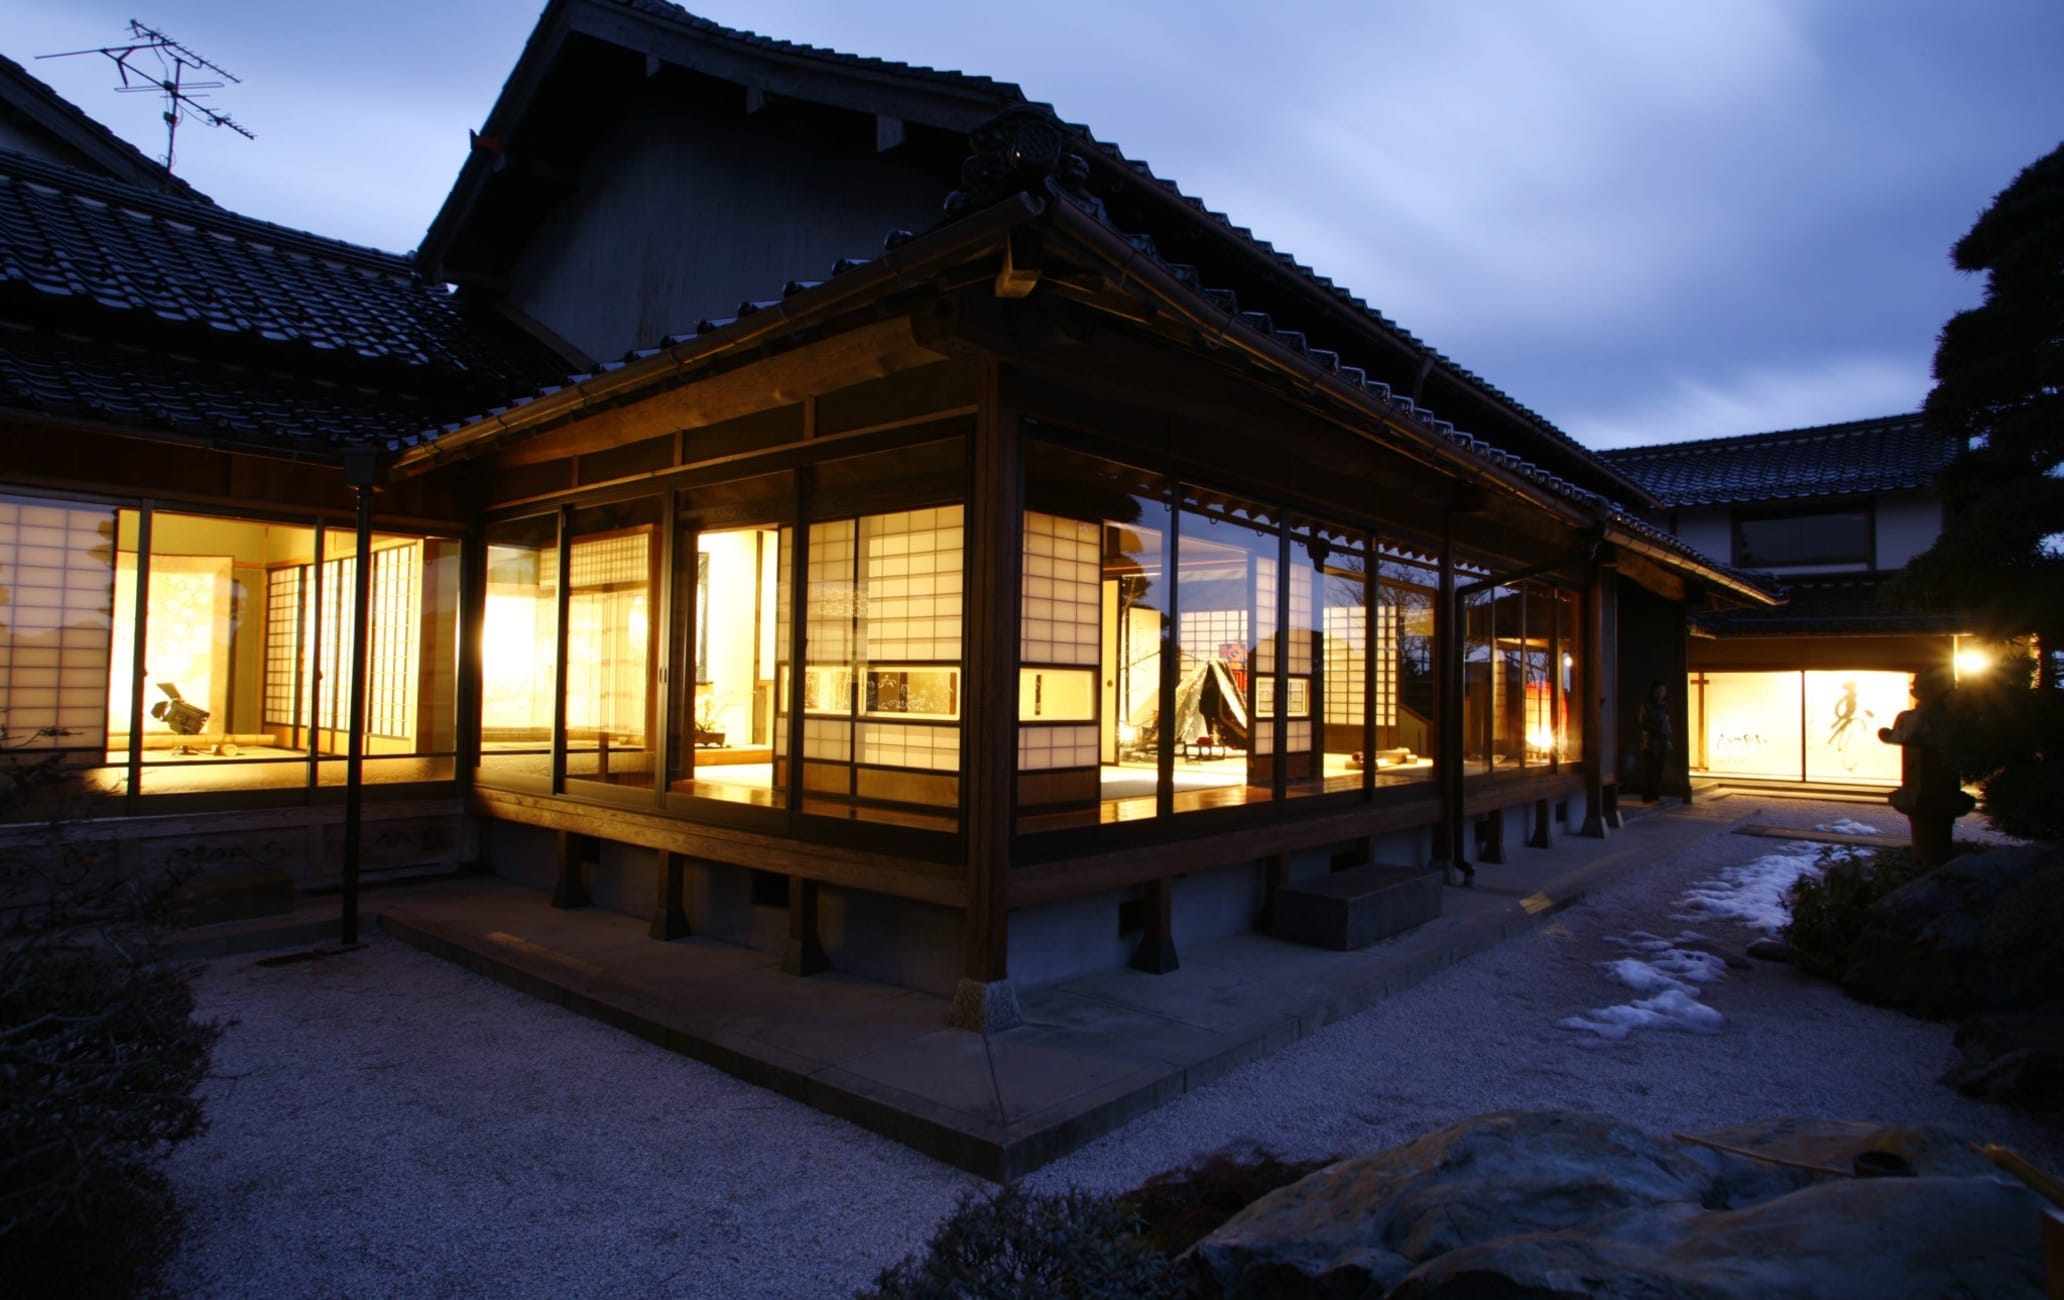 Izumo Museum of Quilt Art